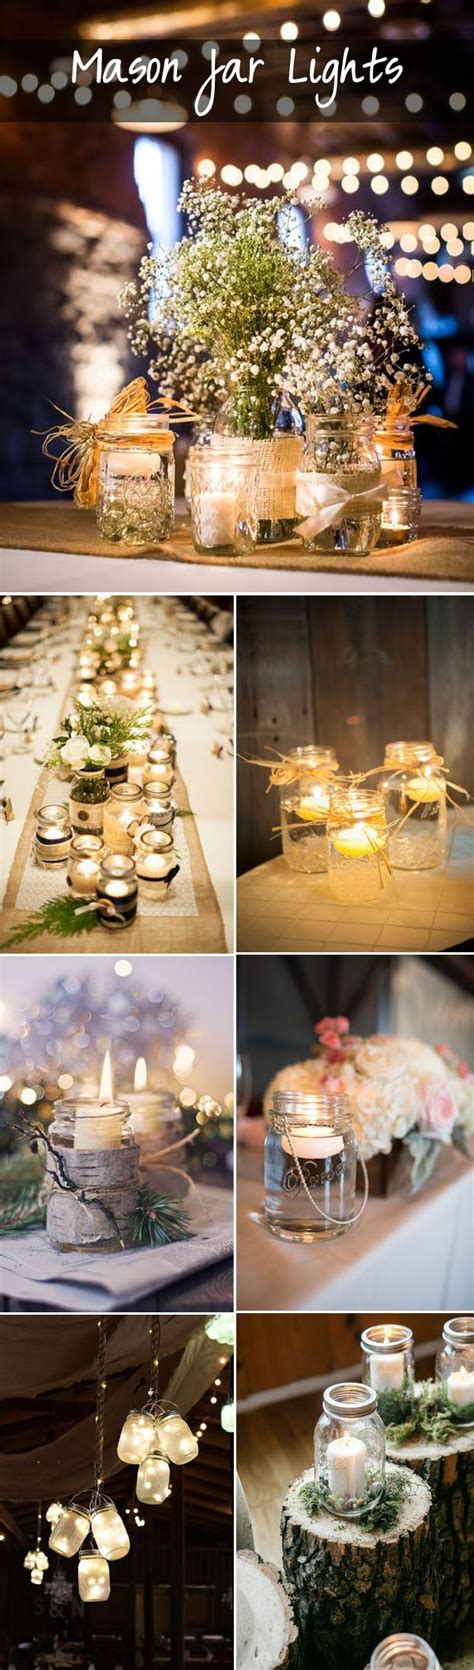 50 Best Rustic Wedding Ideas With Mason Jars Stylish Wedd Blog